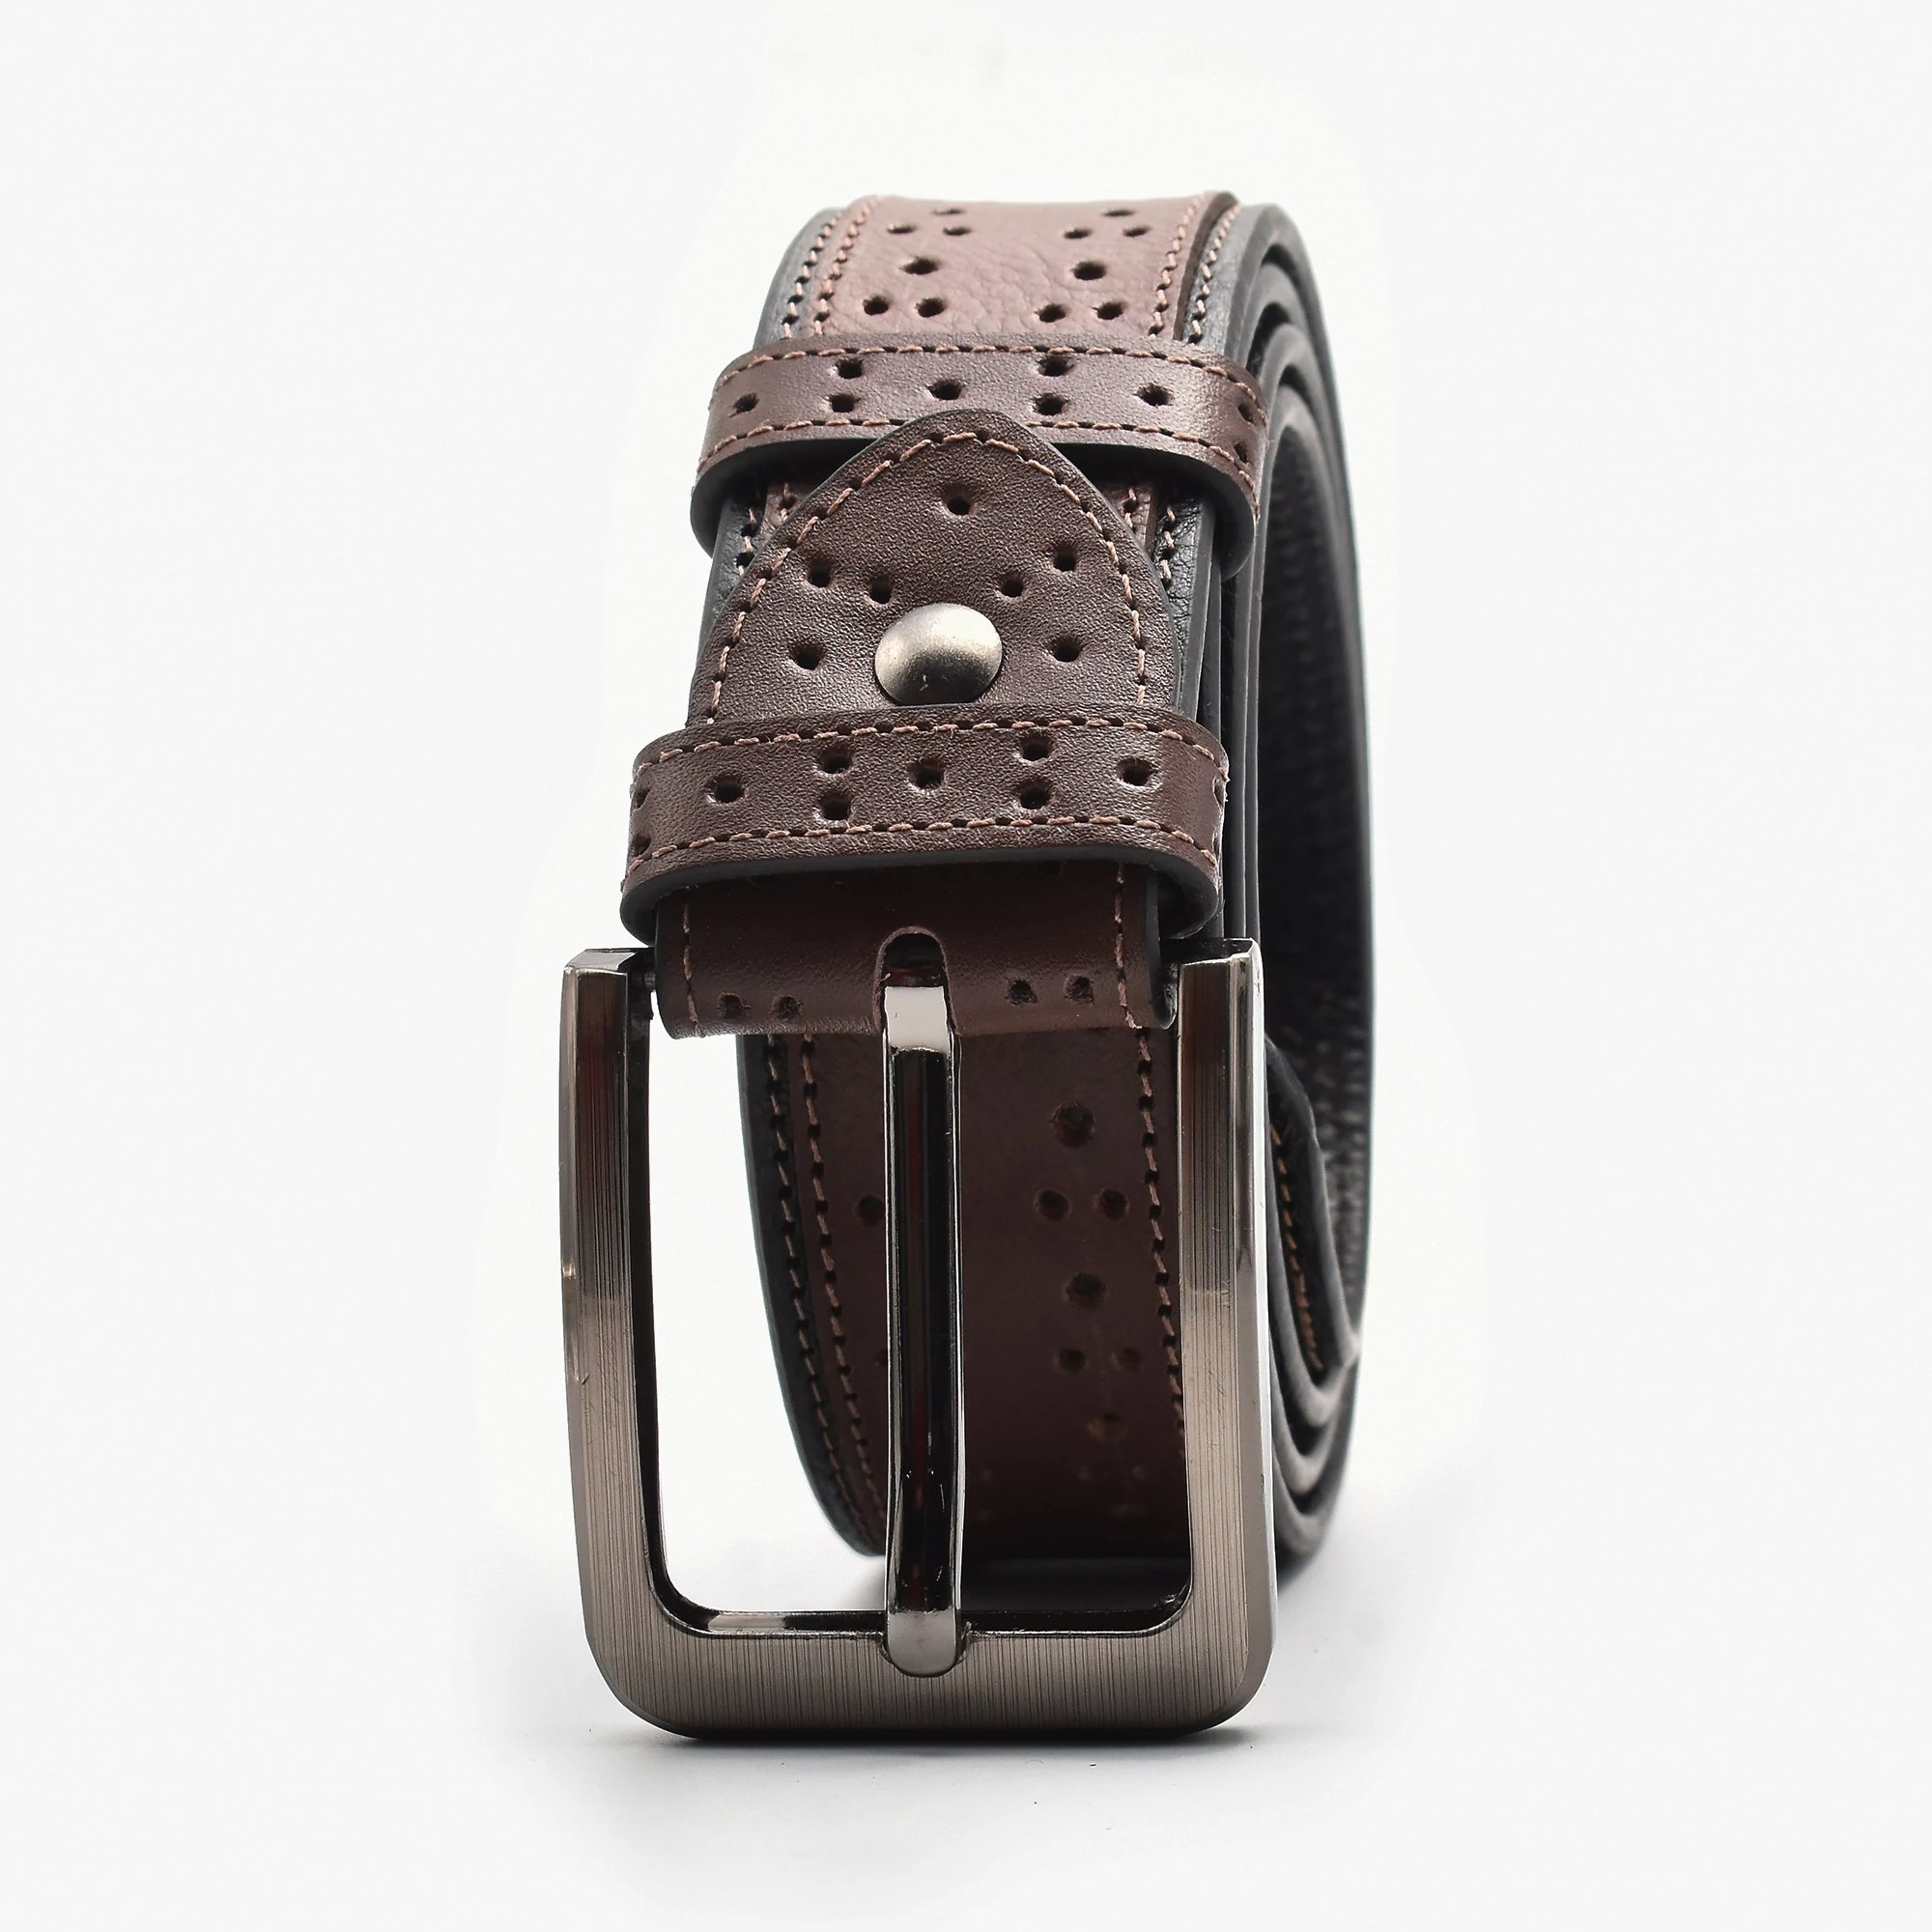 Premium Leather Belt For Men